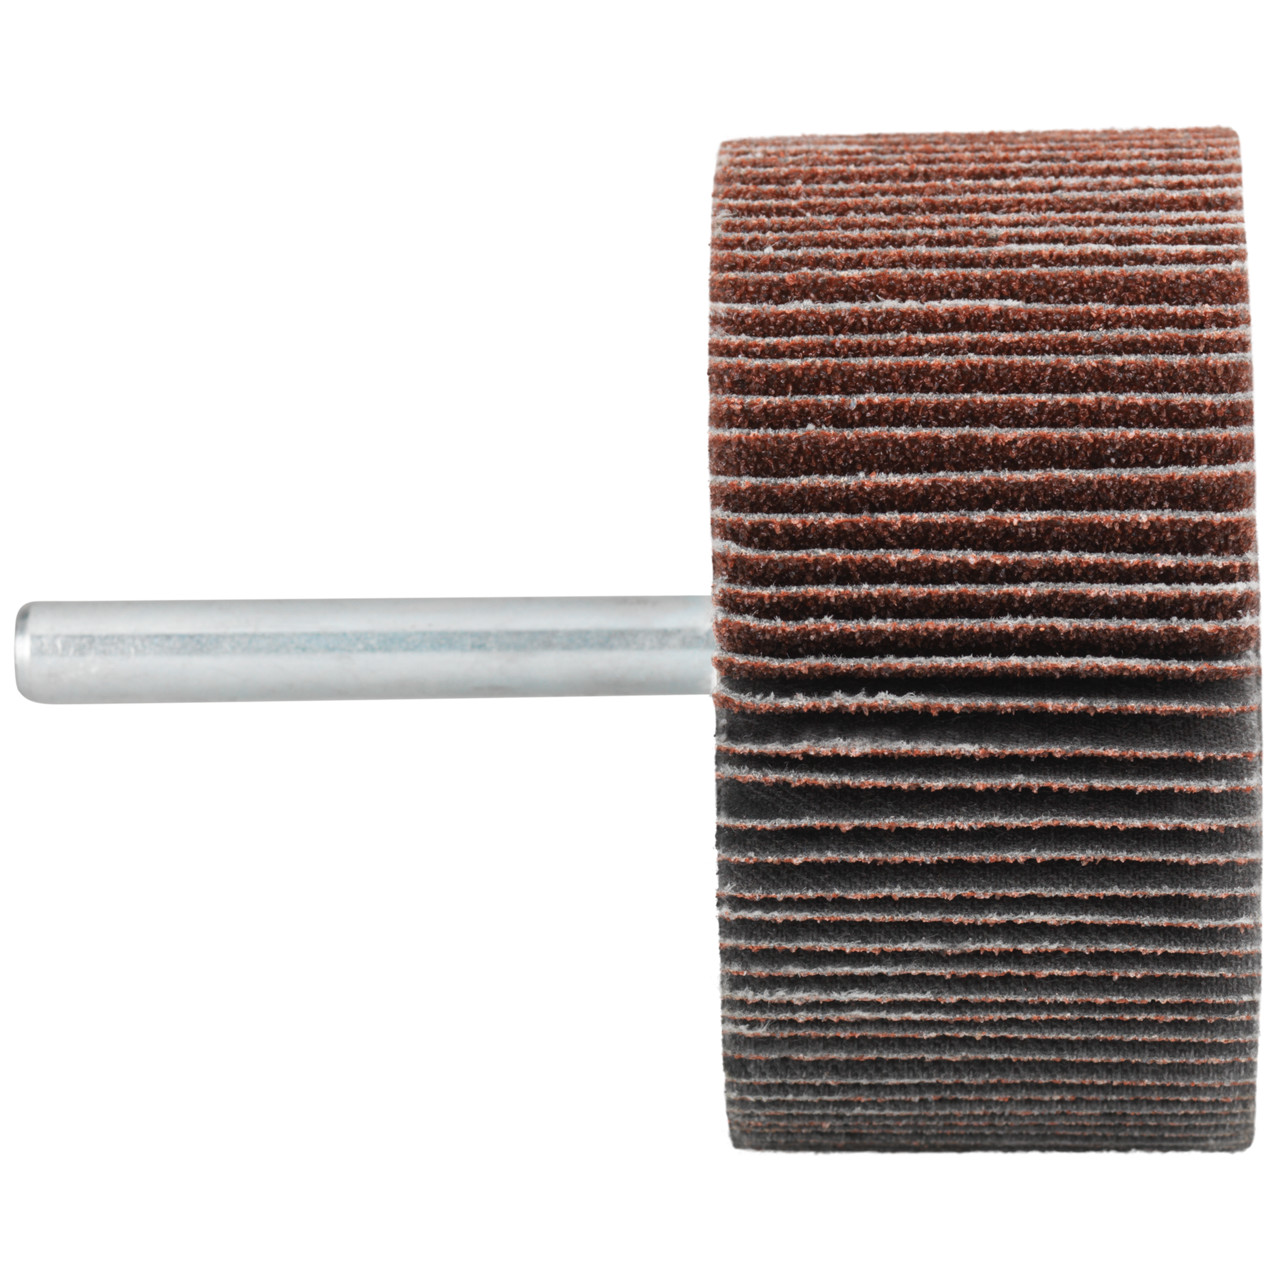 Tyrolit A-P01 C X Pennen DxD 50x15 Voor staal, roestvast staal en non-ferrometalen, P80, vorm: 52LA, Art. 816923